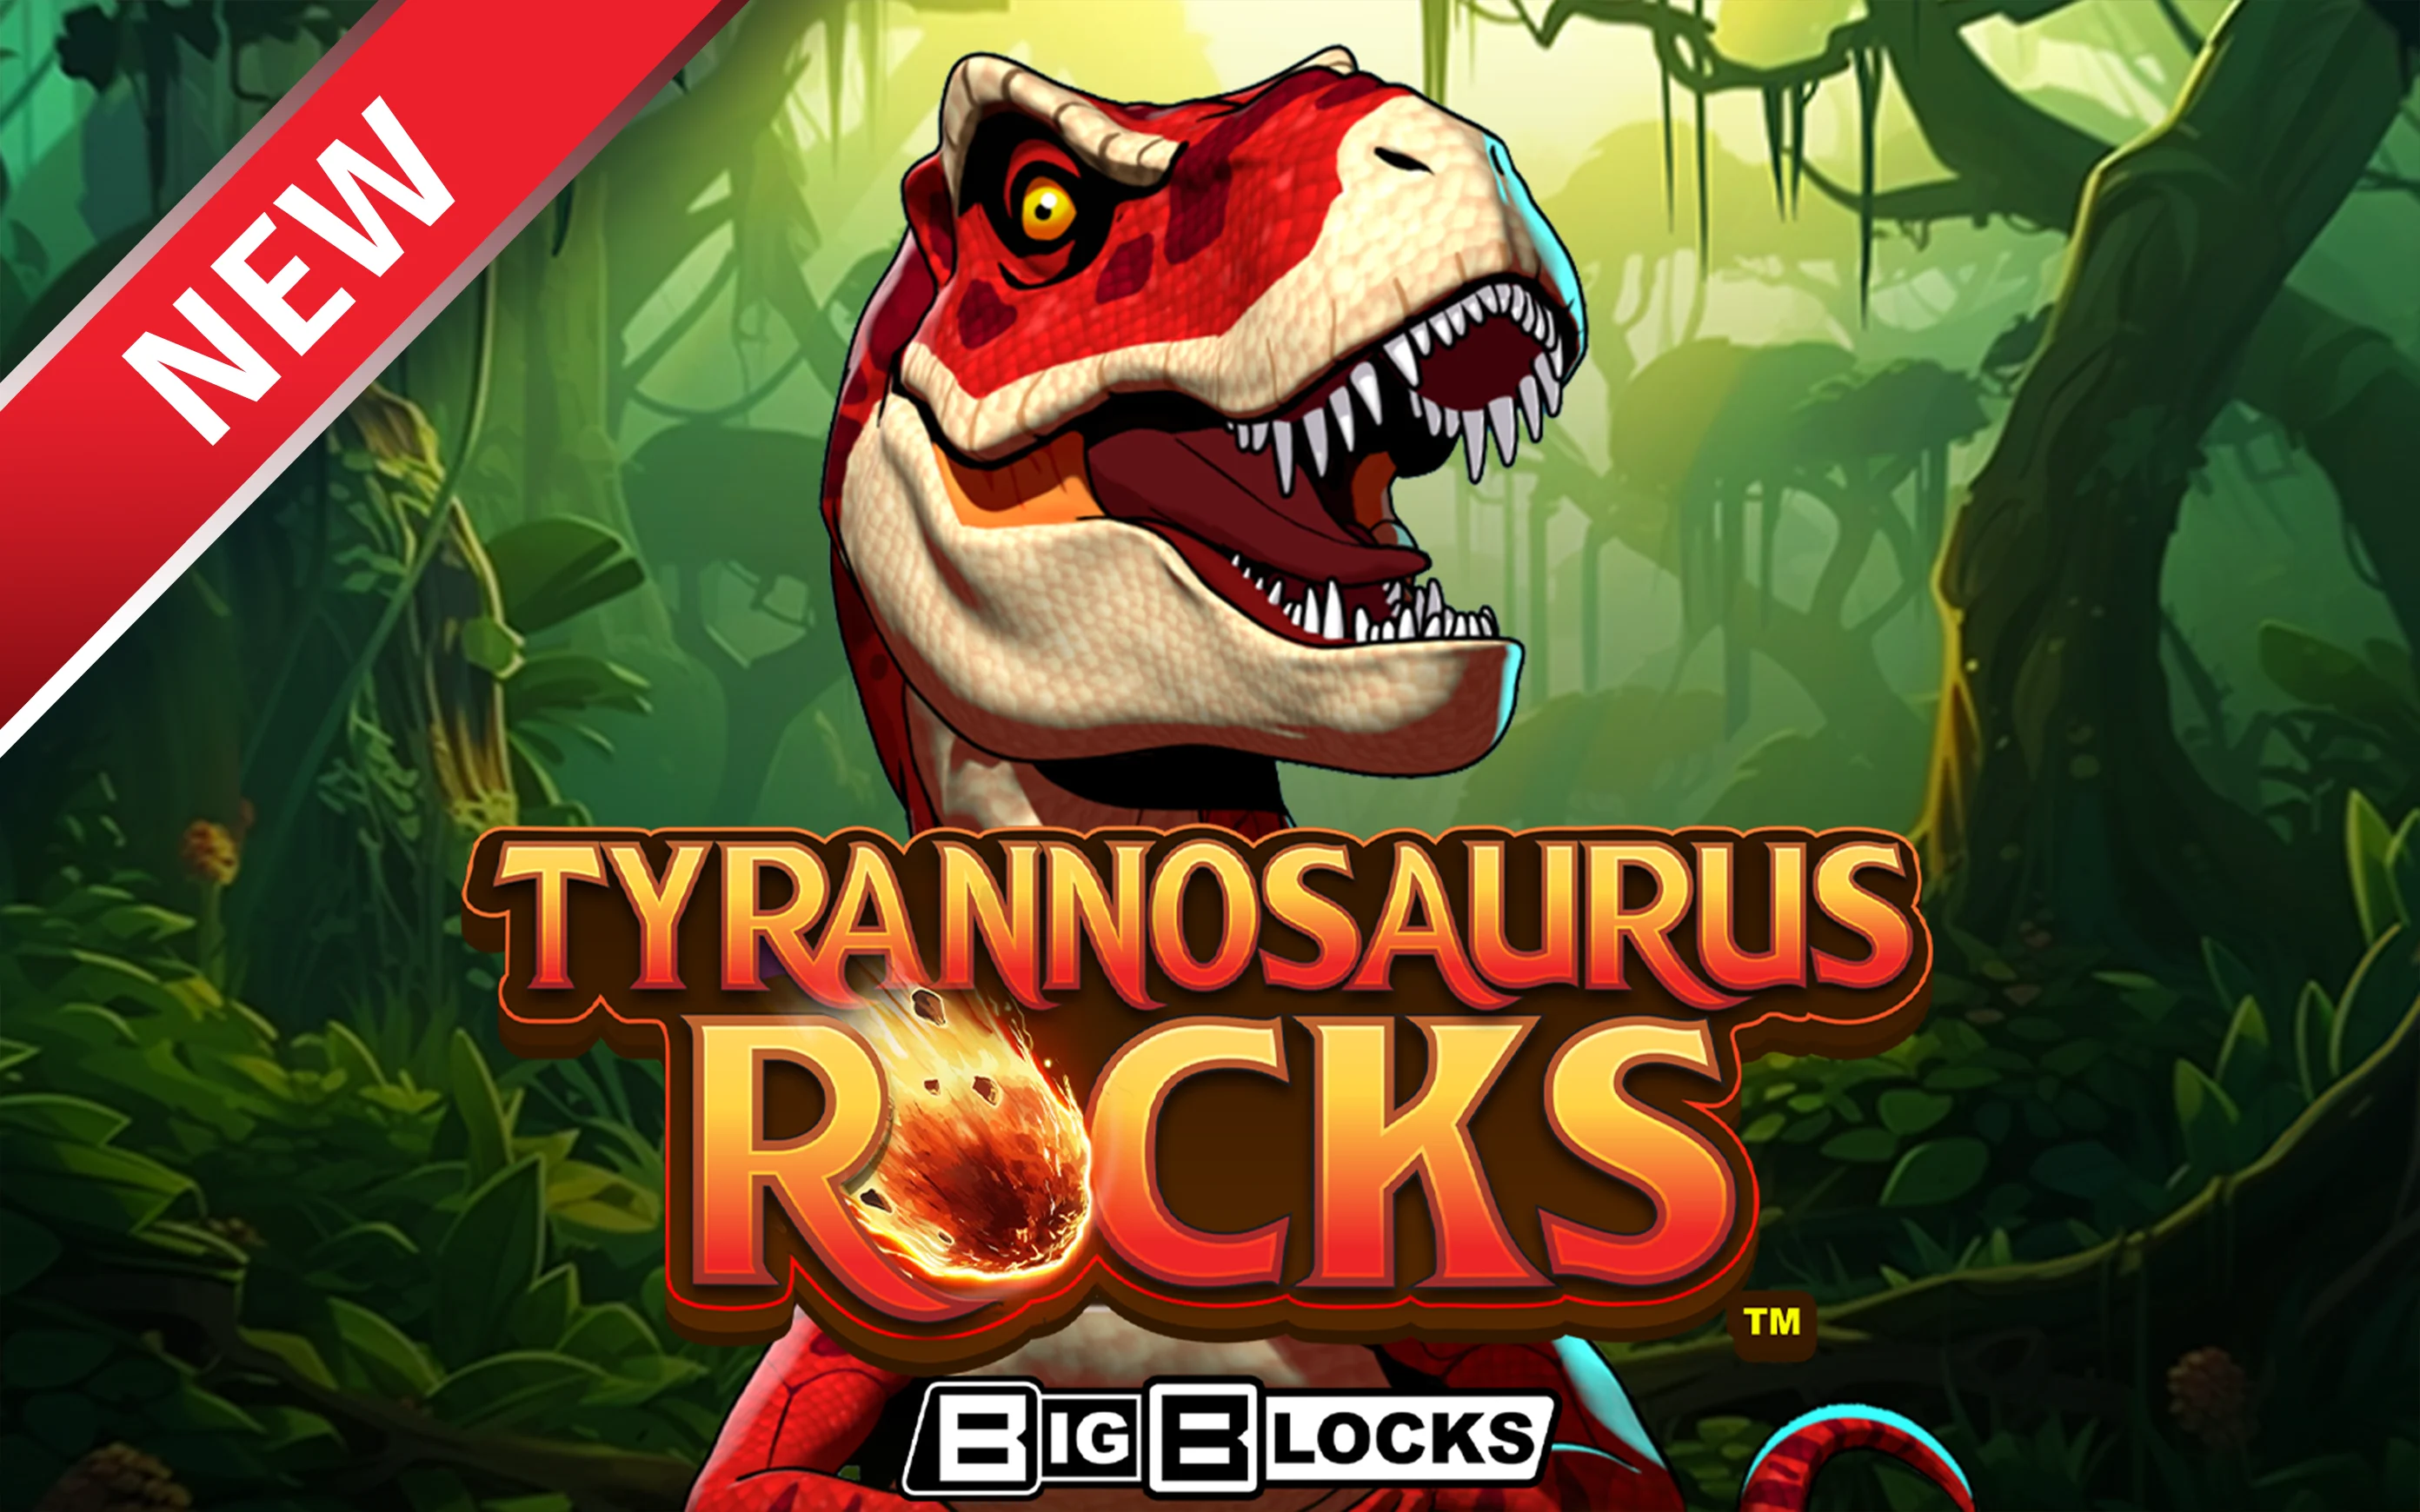 Play Tyrannosaurus Rocks™ on Starcasino.be online casino